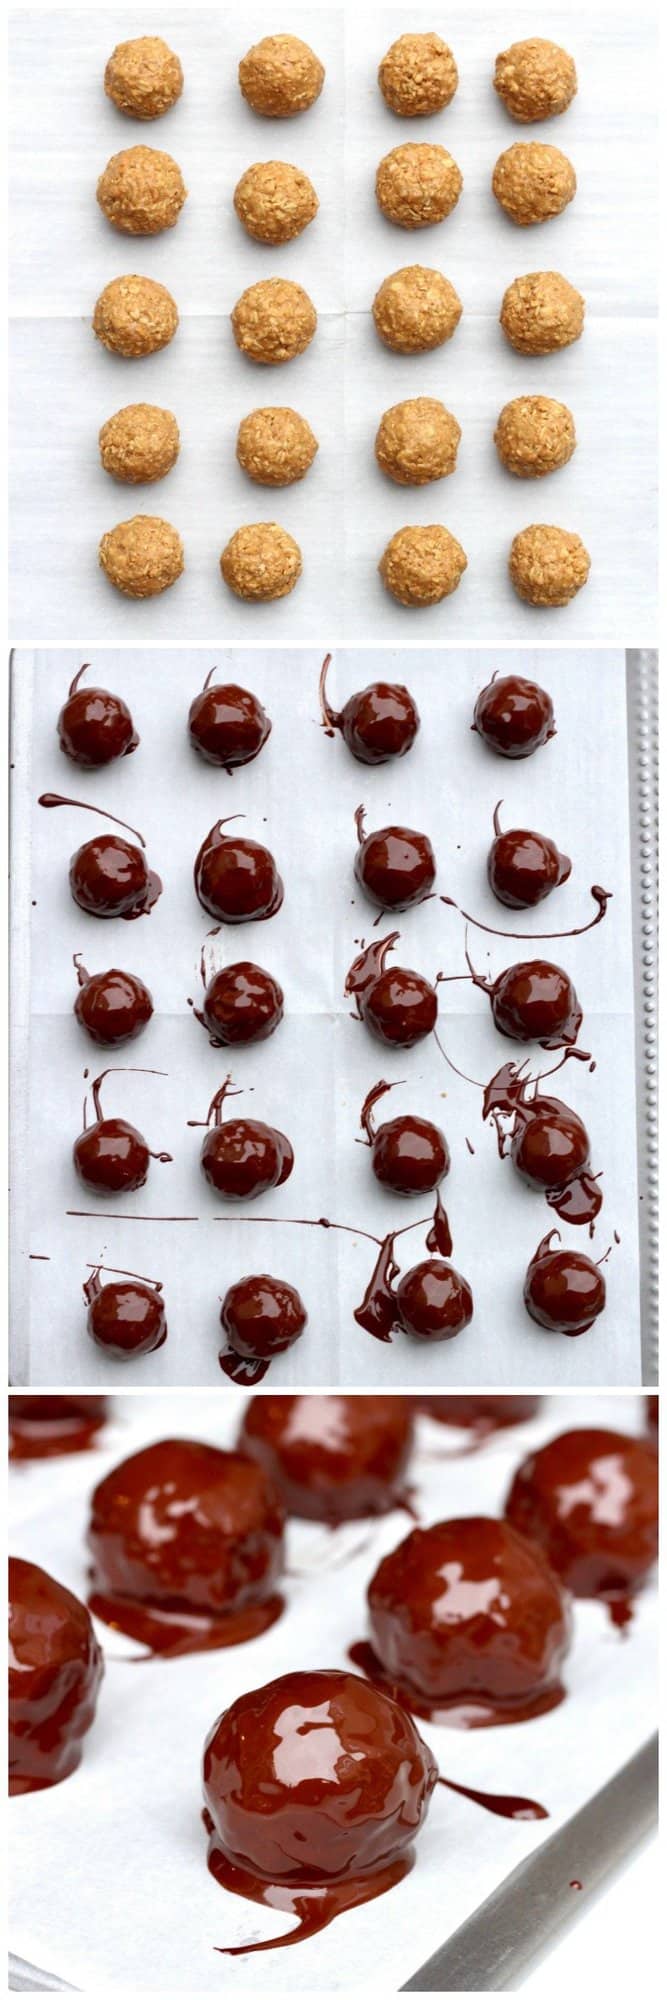 Healthy 5-Ingredient Dark Chocolate Peanut Butter Balls